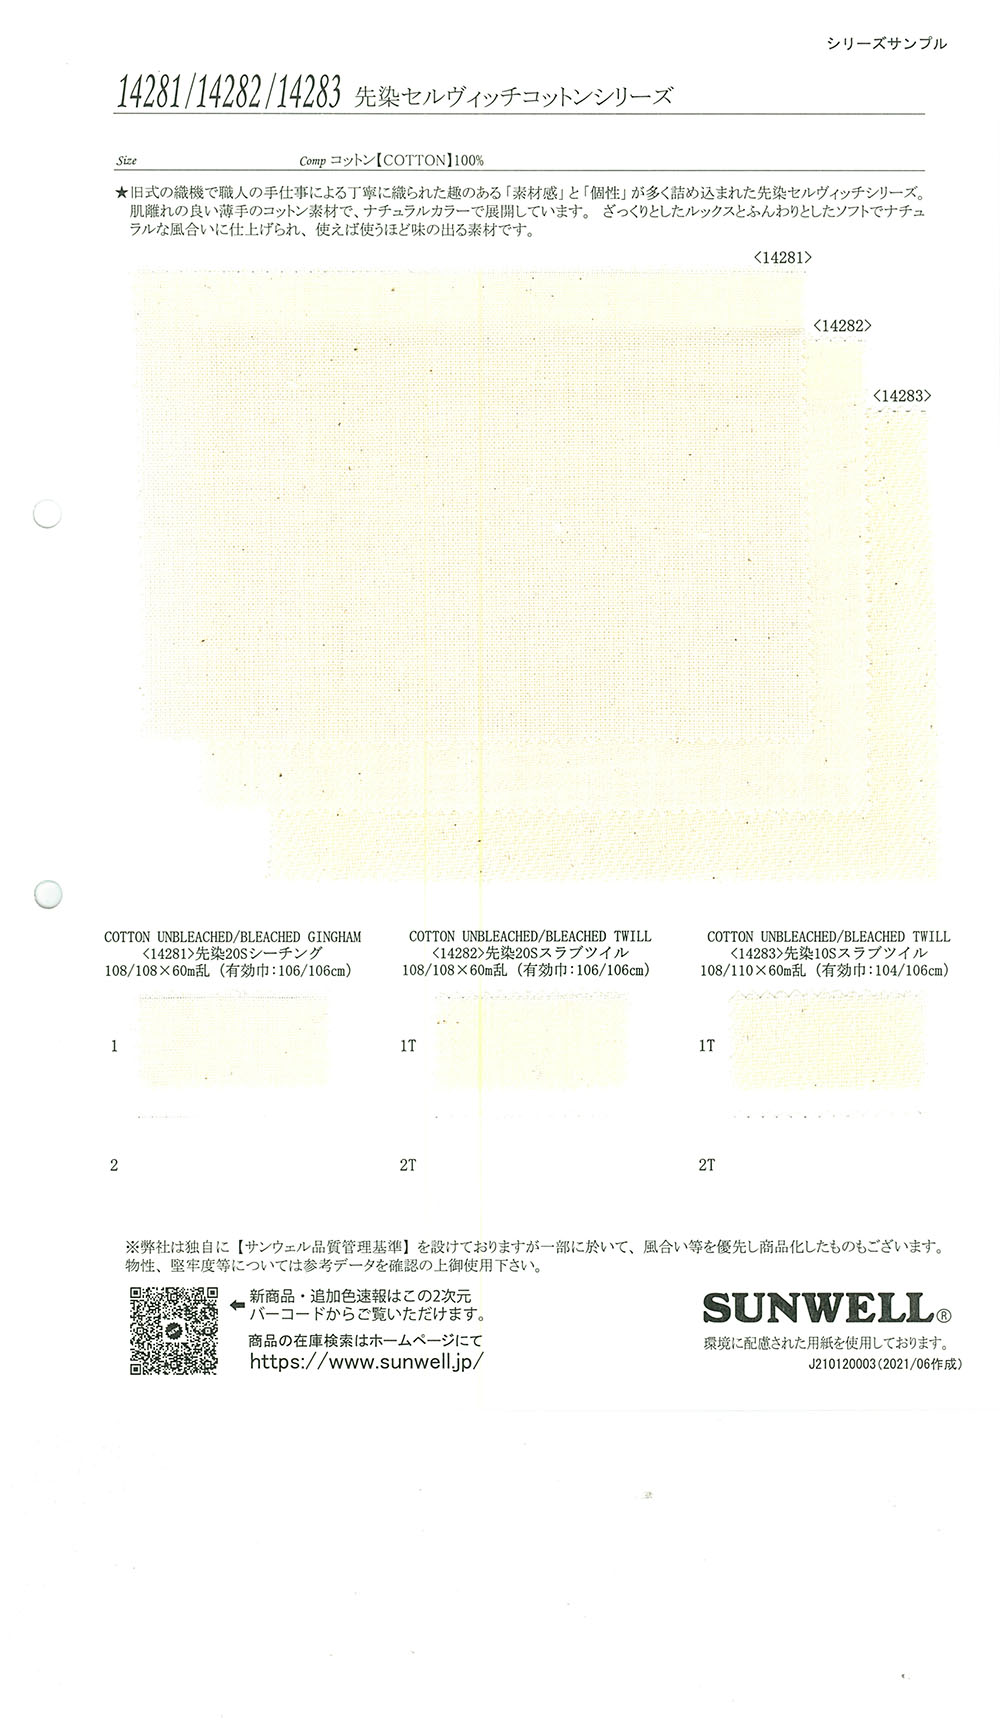 14281 세르비치 코튼 시리즈 선염 20 실 광목[원단] SUNWELL